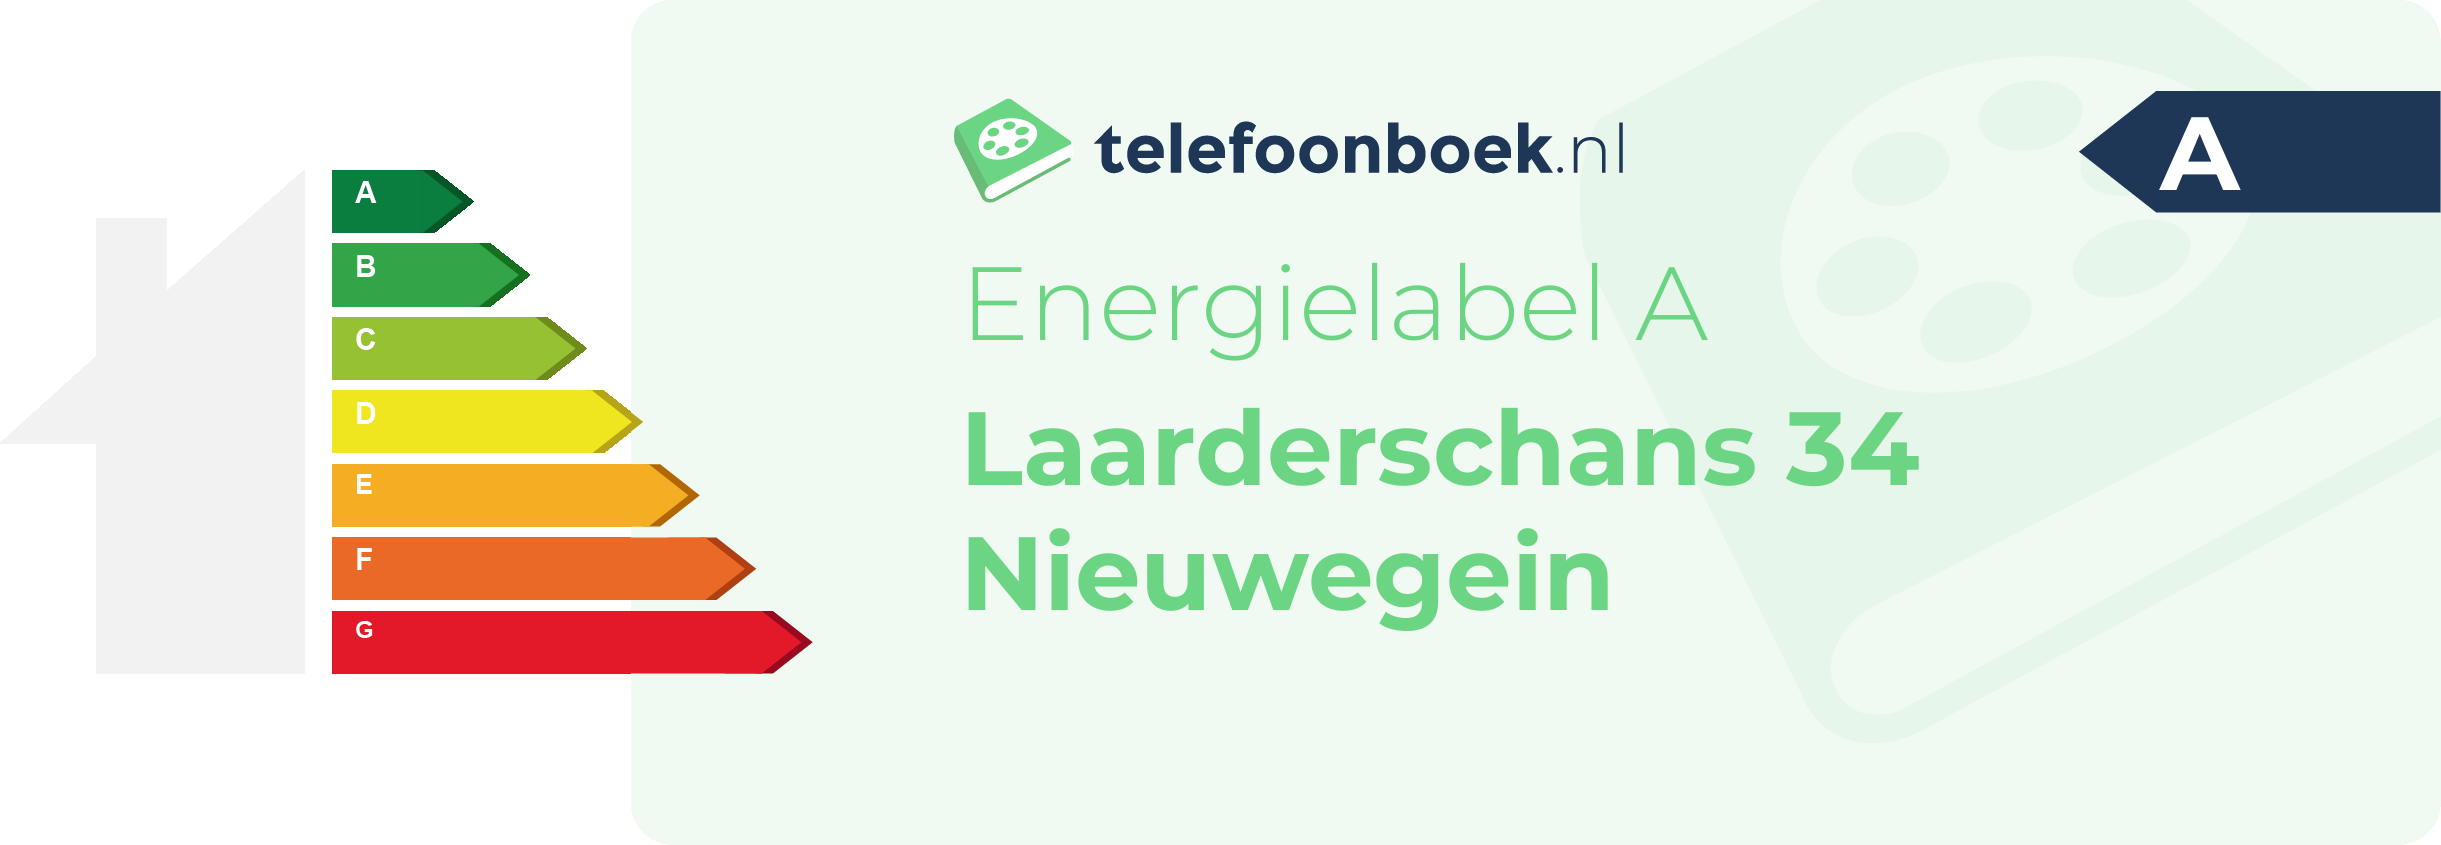 Energielabel Laarderschans 34 Nieuwegein